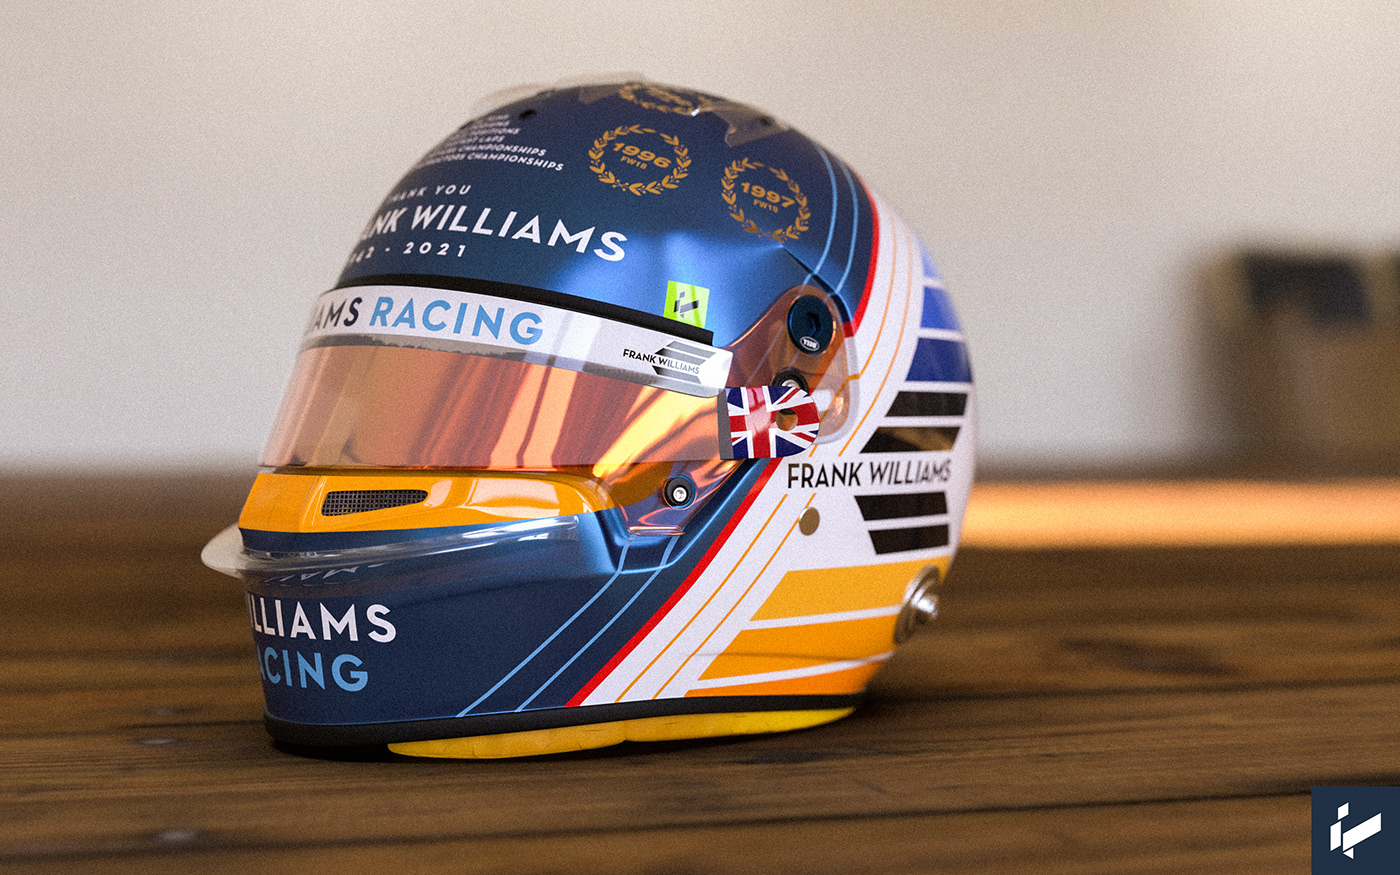 #3D #Branding #cgi #Design #F1 #formula1 #formulaone #graphicDesign #williams #williamsracing